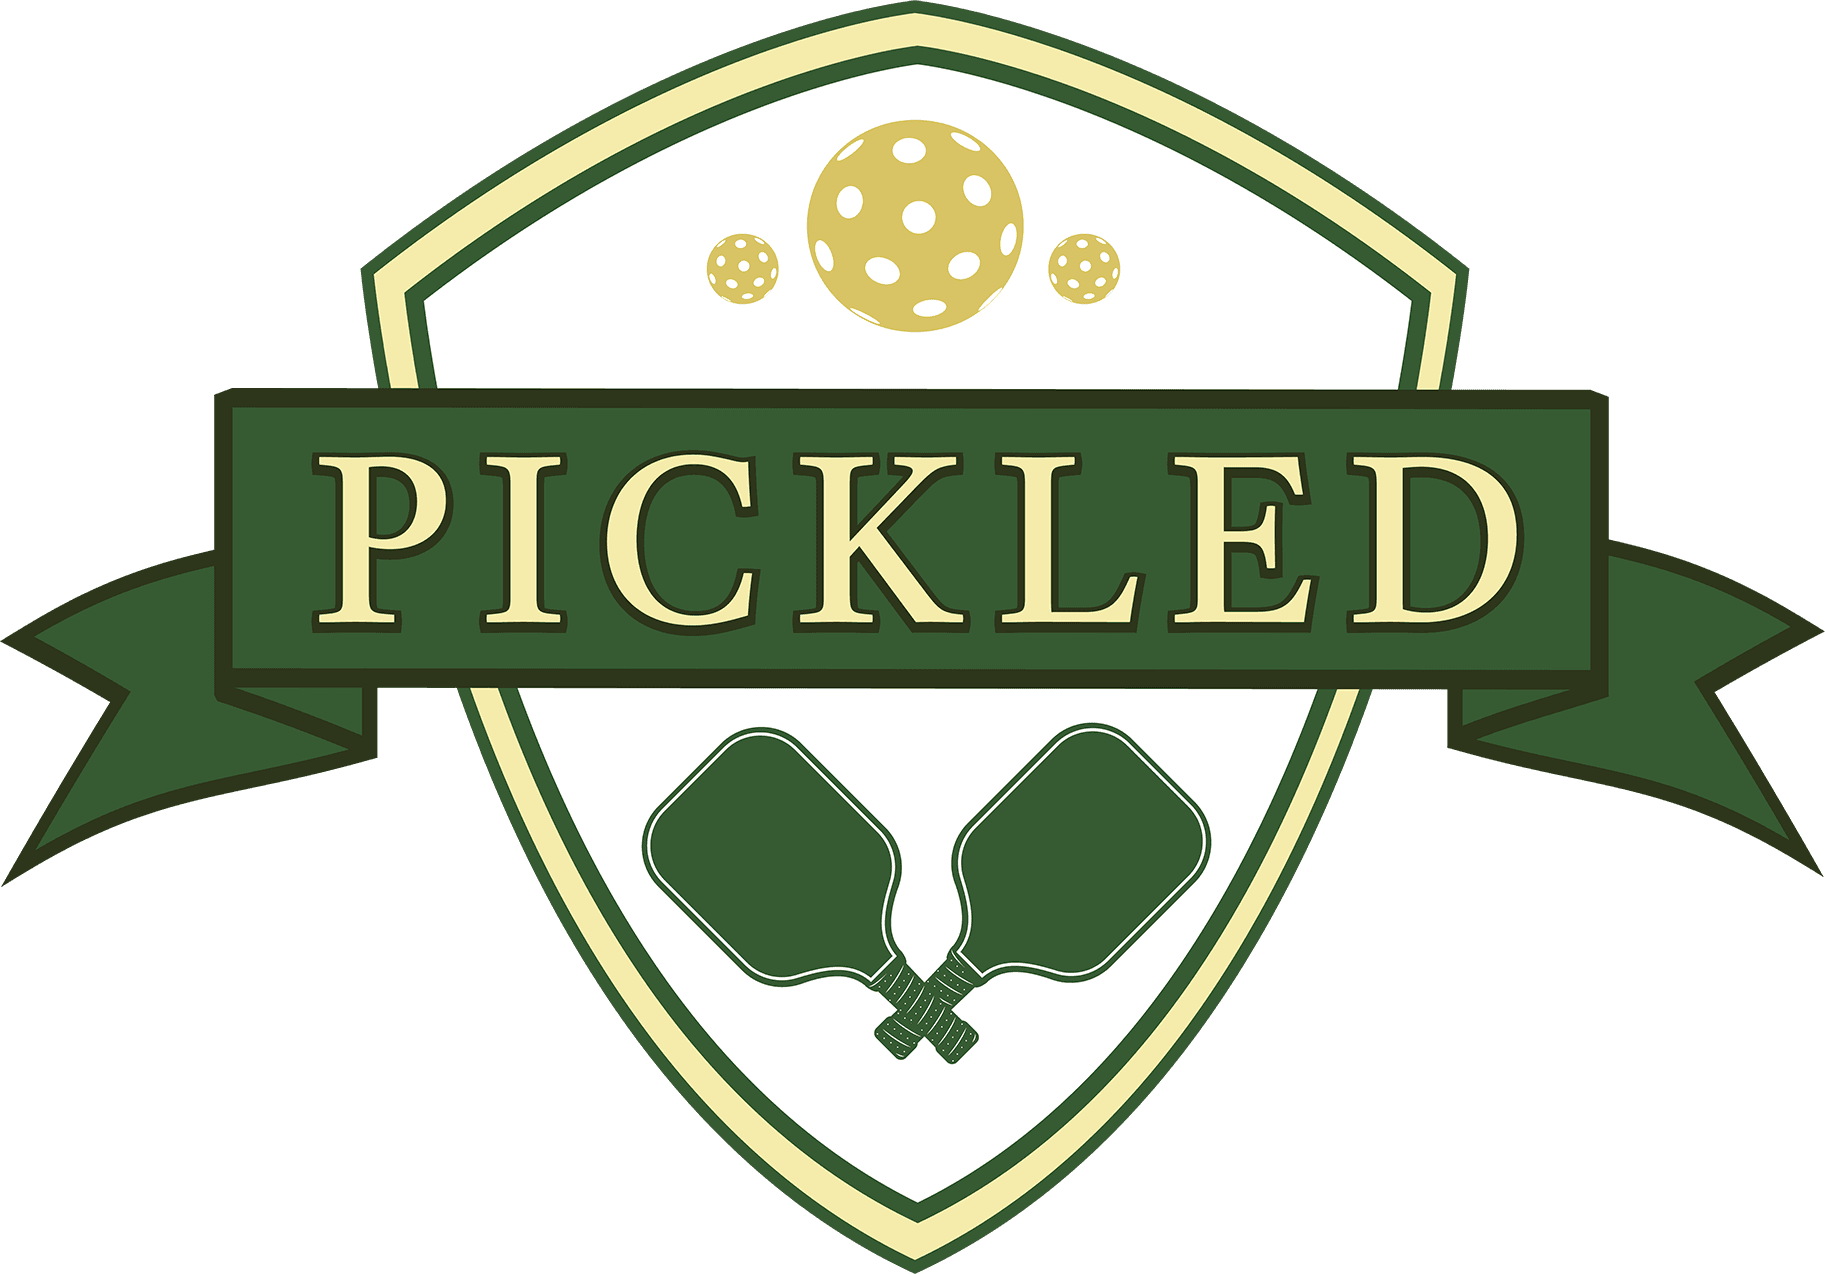 Pickled logo